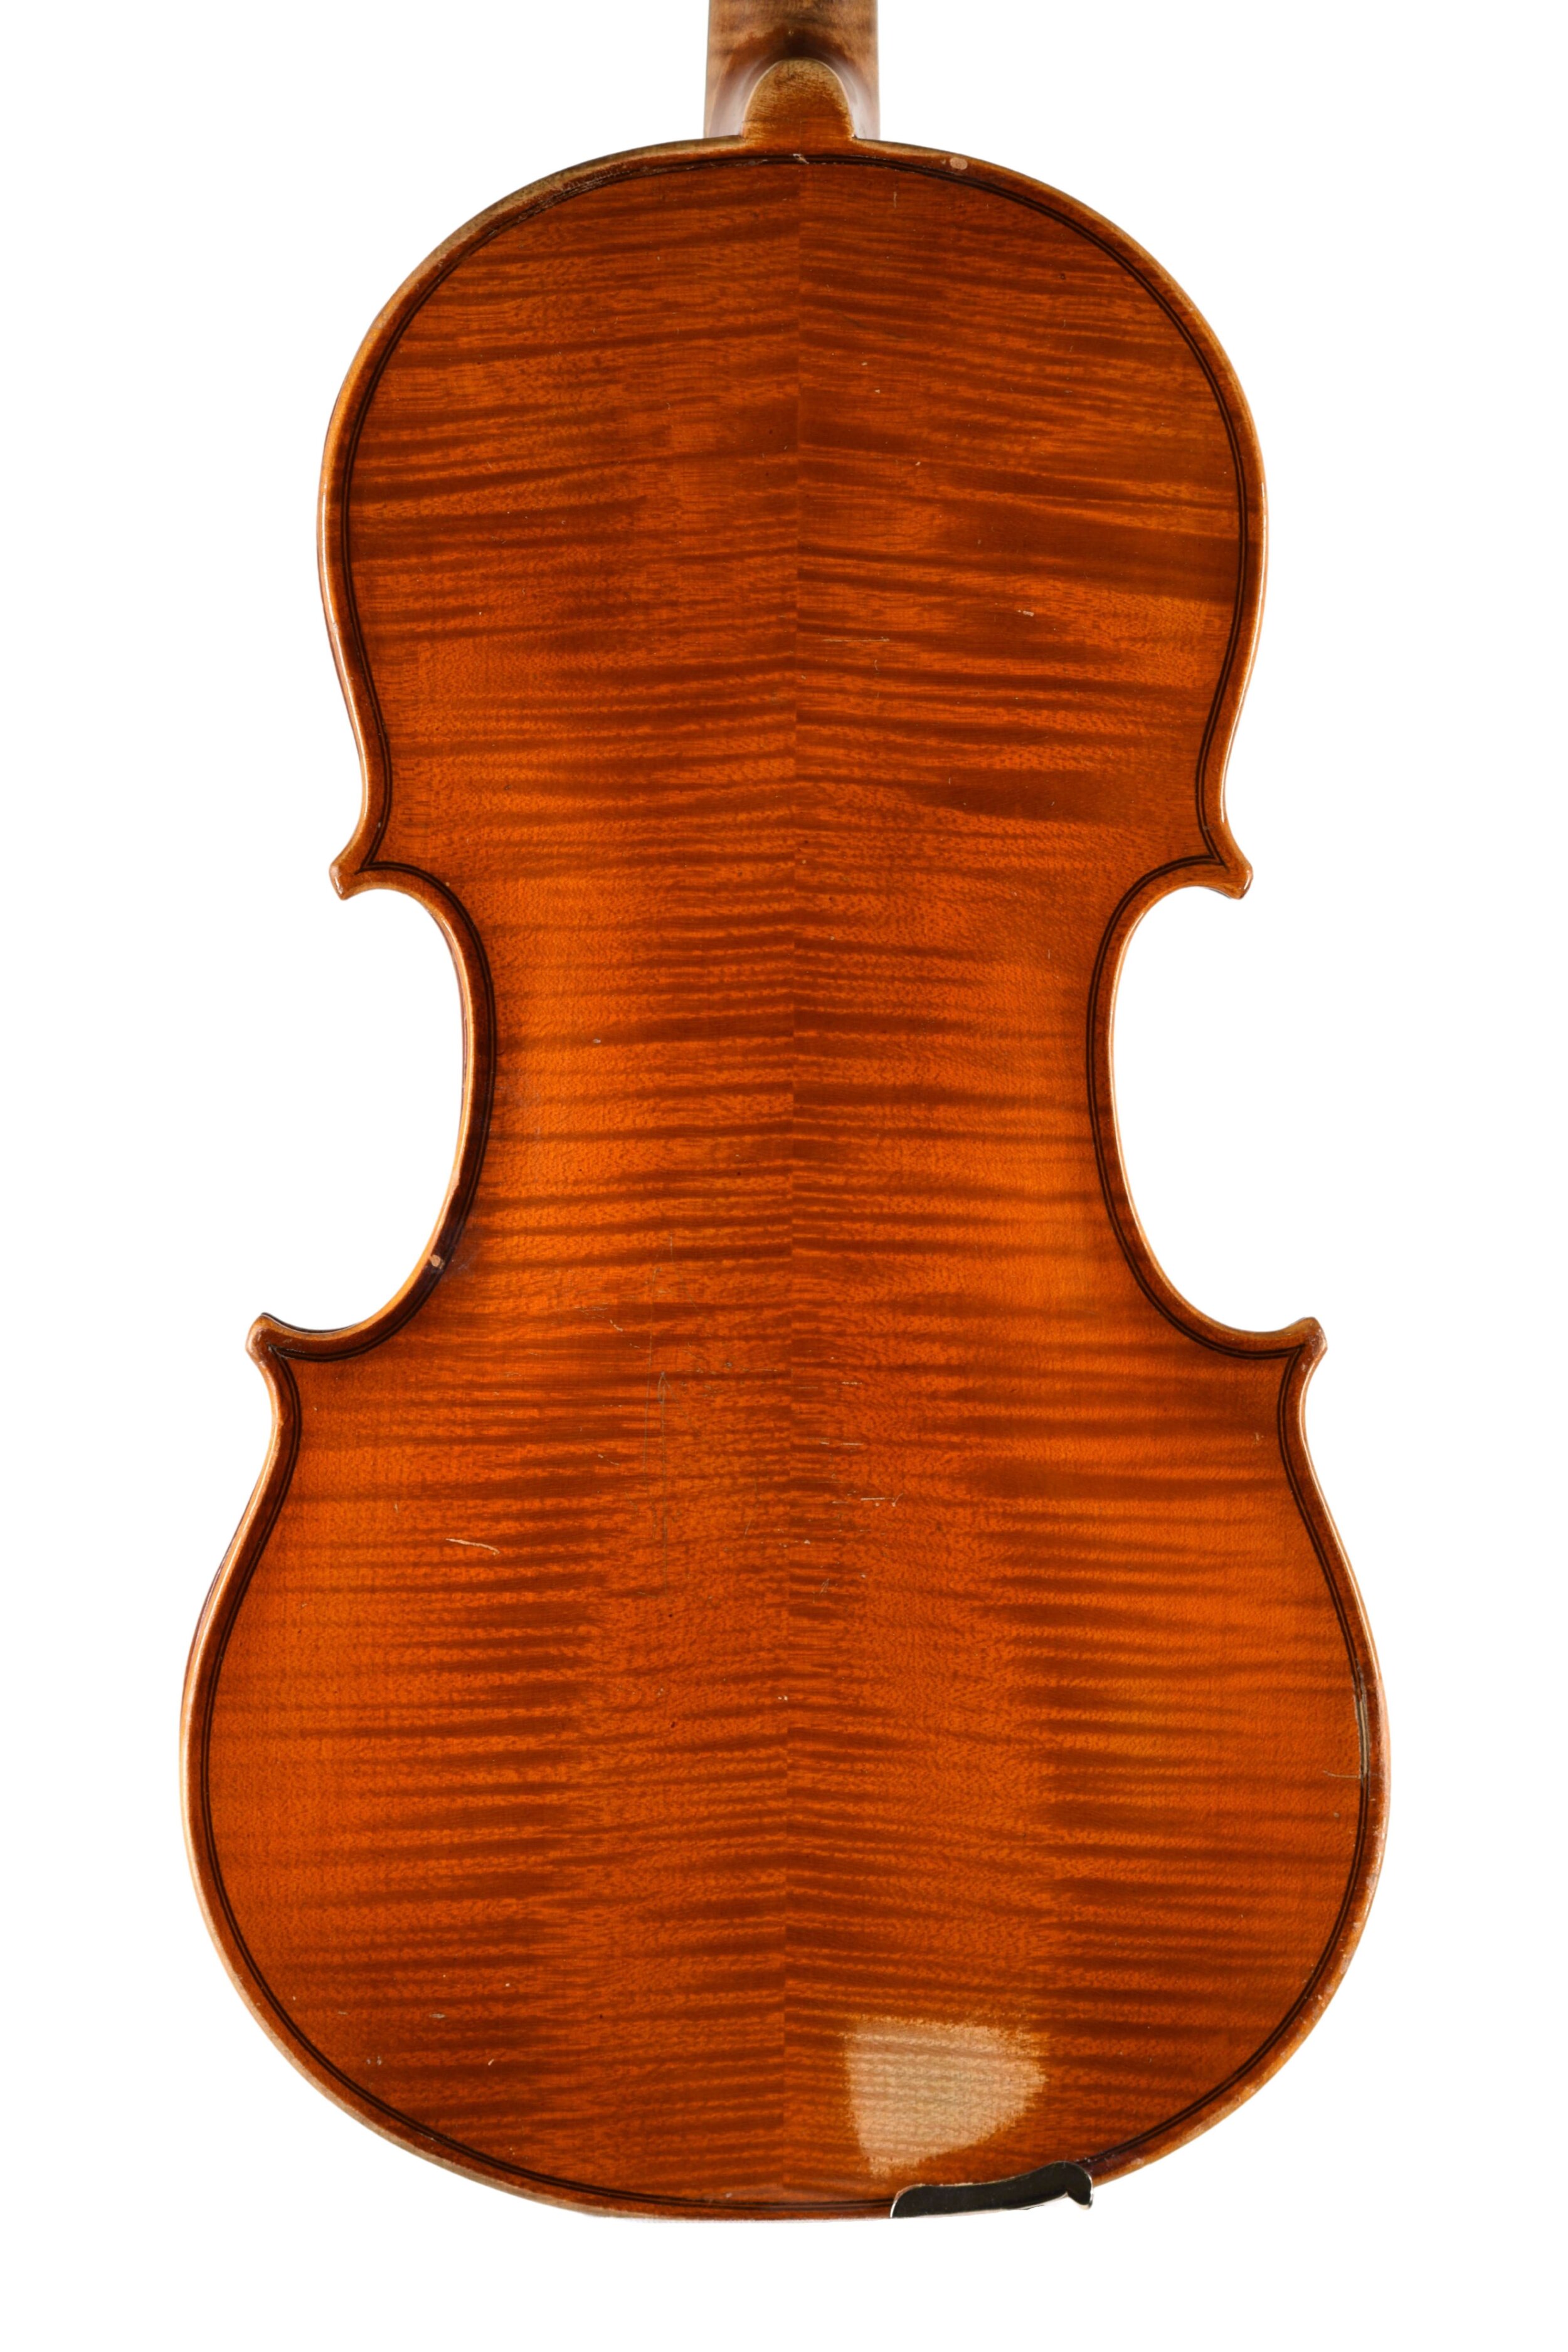 Antique large Czech viola